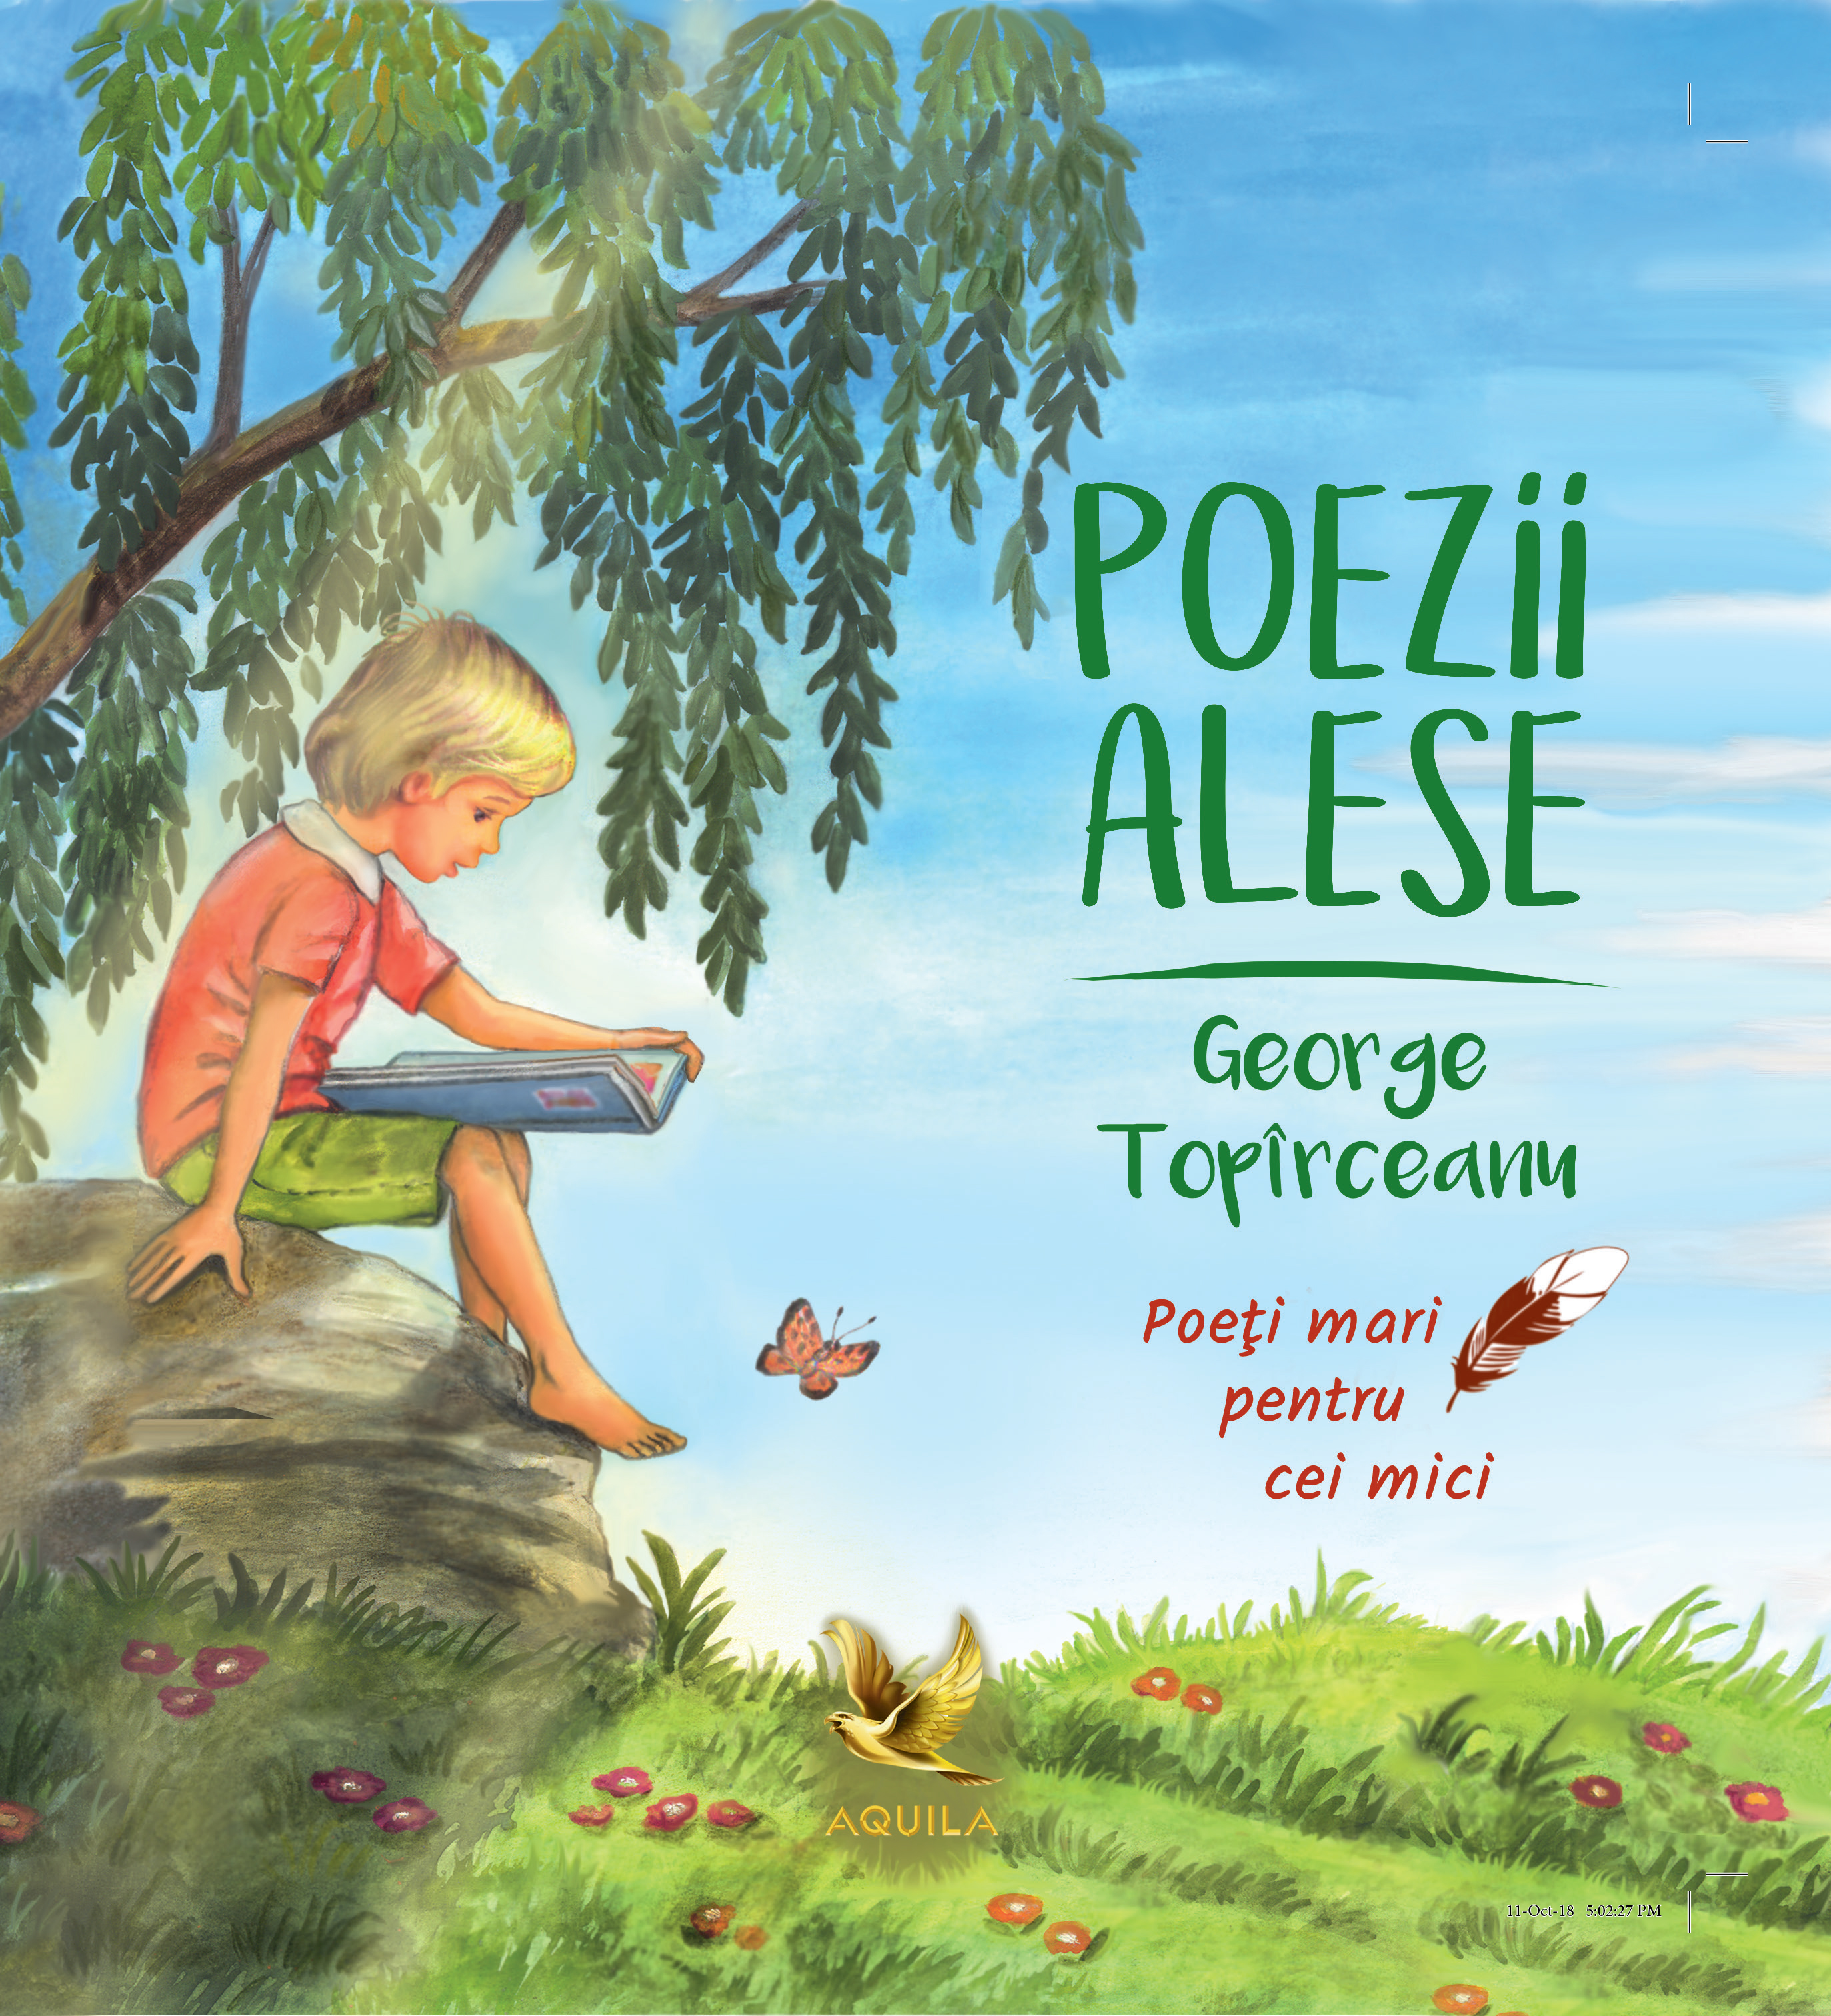 Poezii alese - George Toparceanu